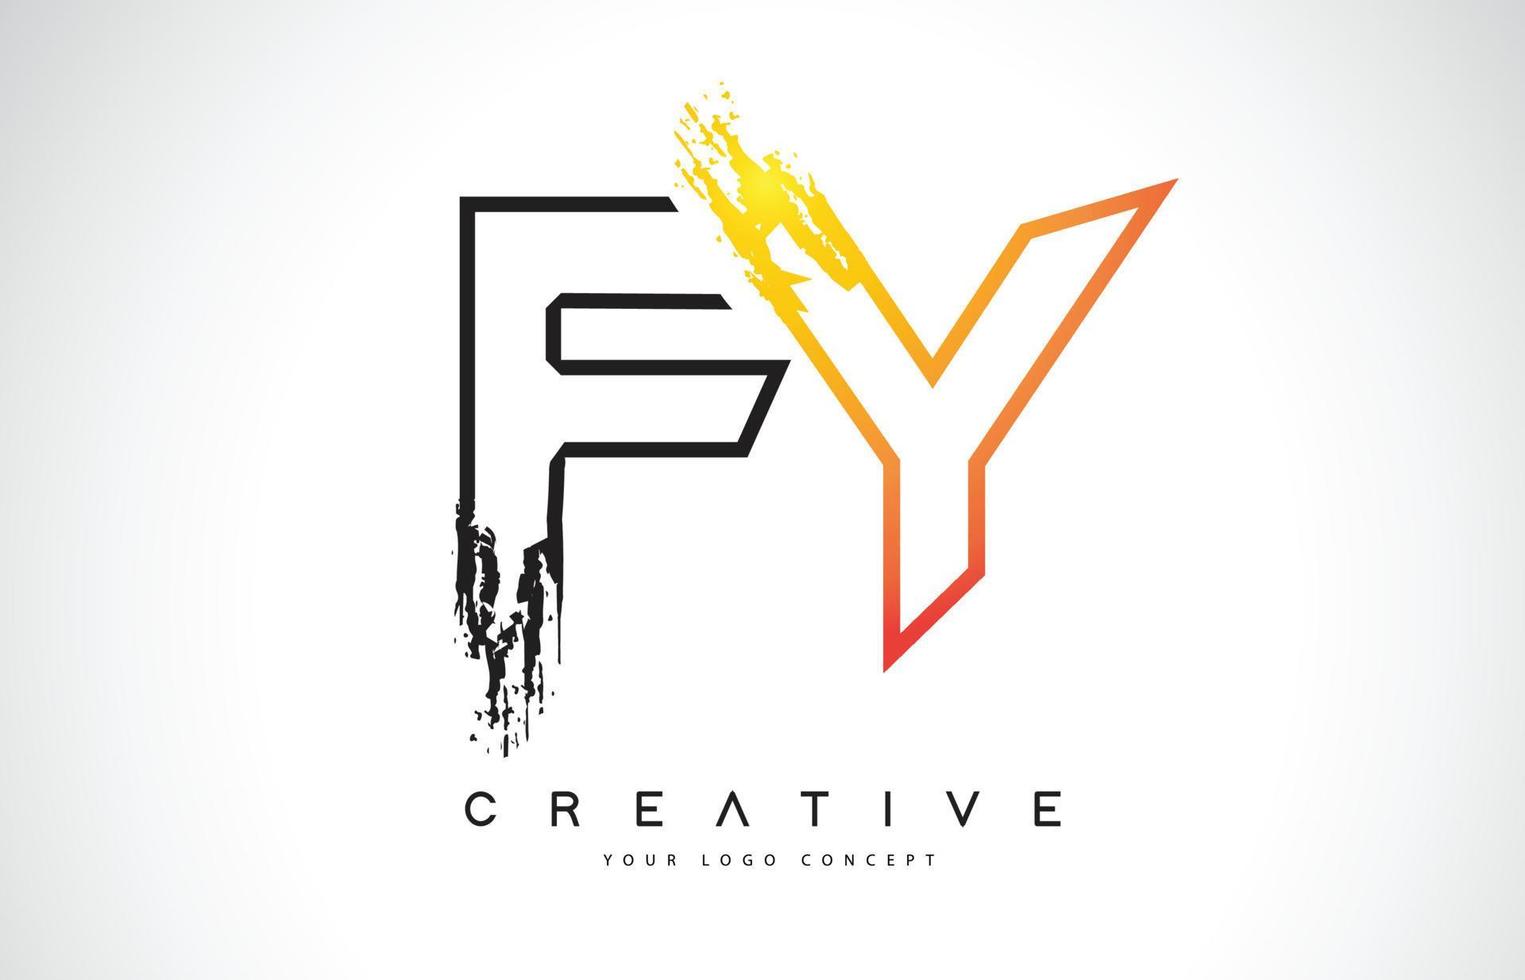 FY Creative Modern Logo Design with Orange and Black Colors. Monogram Stroke Letter Design. vector